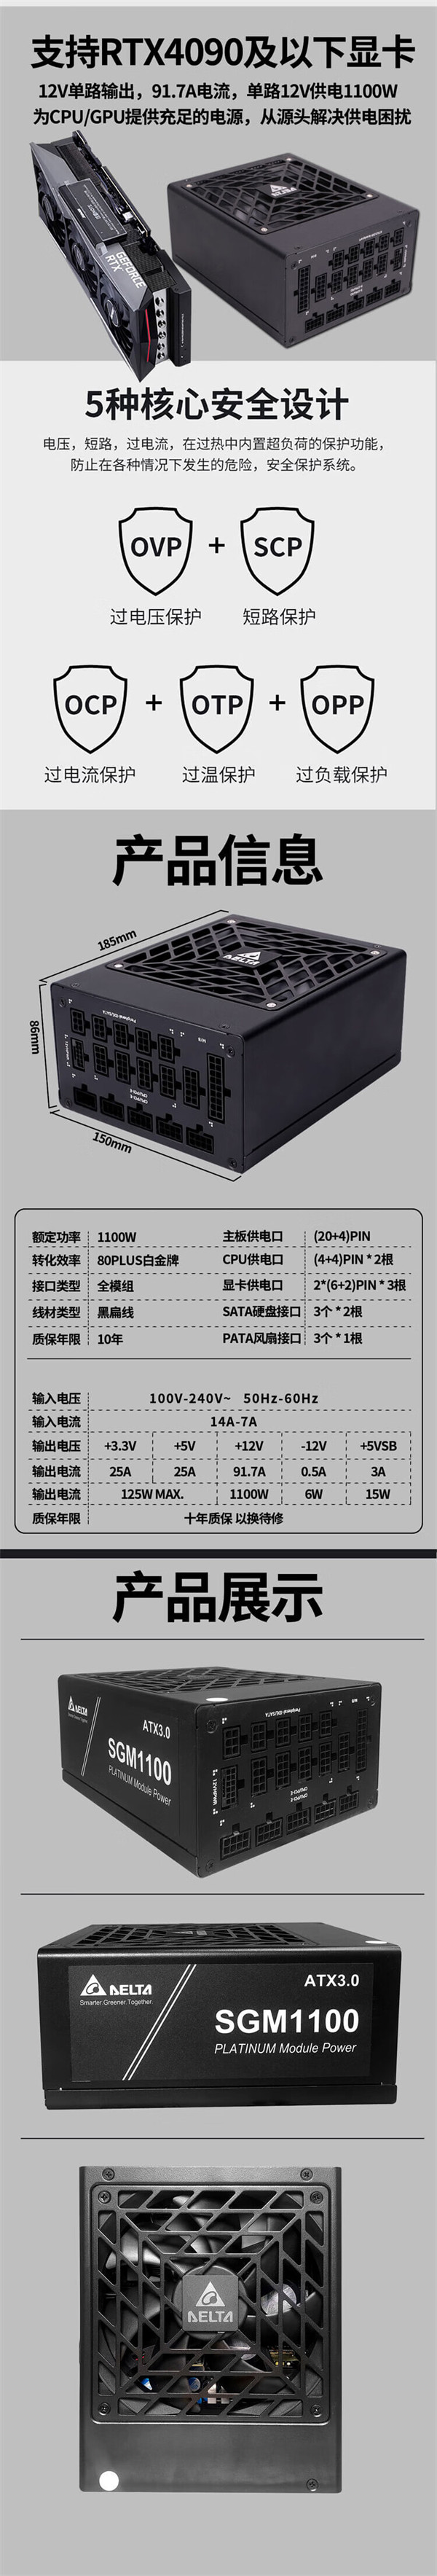 台达预热 SGM 系列新品：包括 1100W 和 1300W 两款电源，定价 1699/1899 元